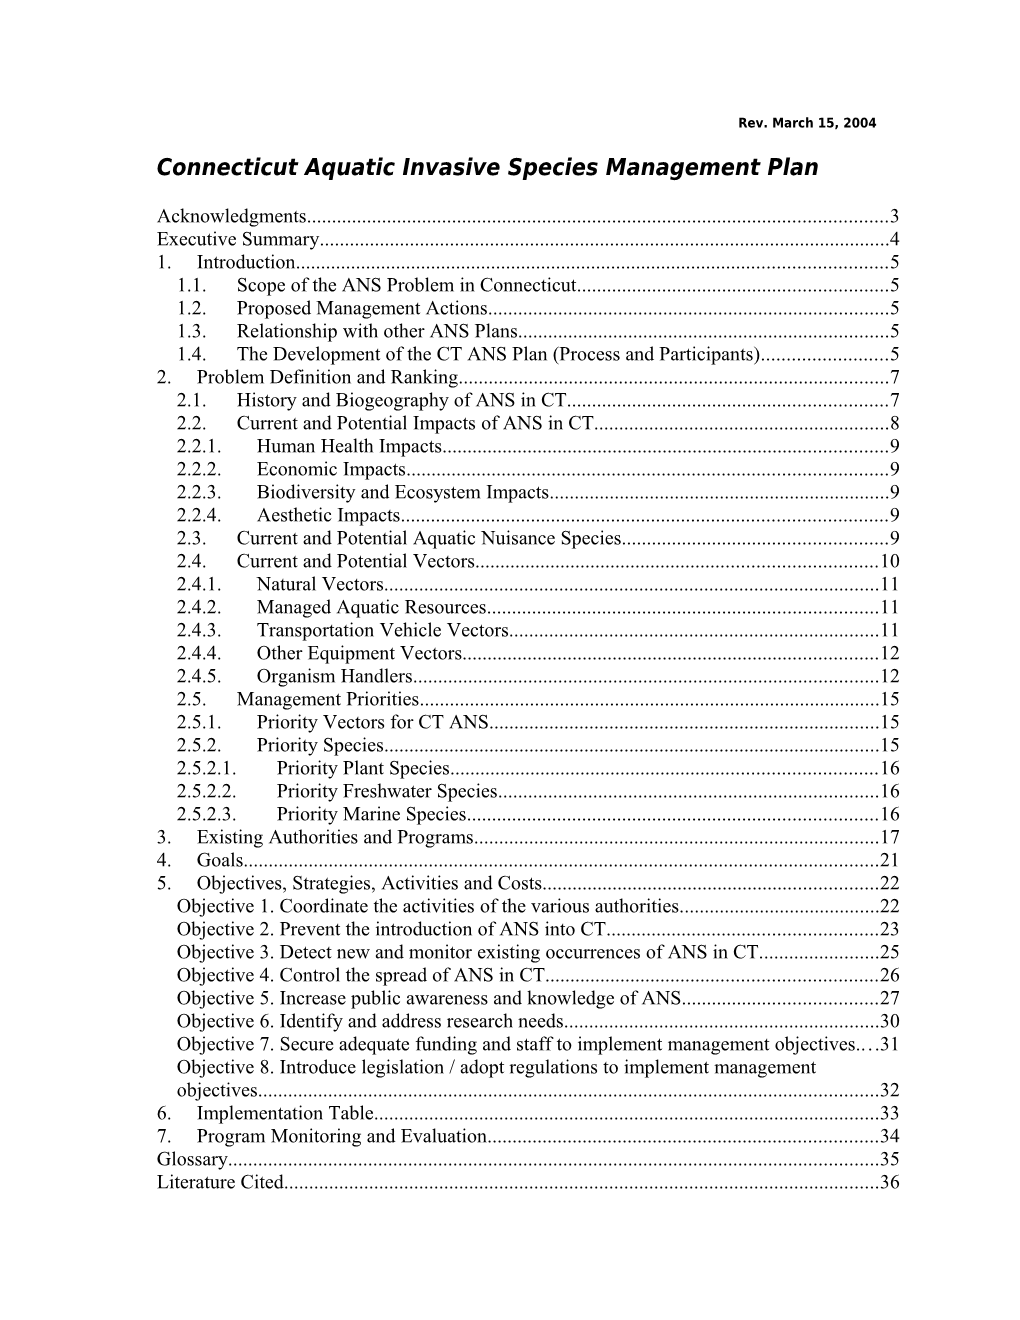 Connecticut Aquatic Invasive Species Management Plan